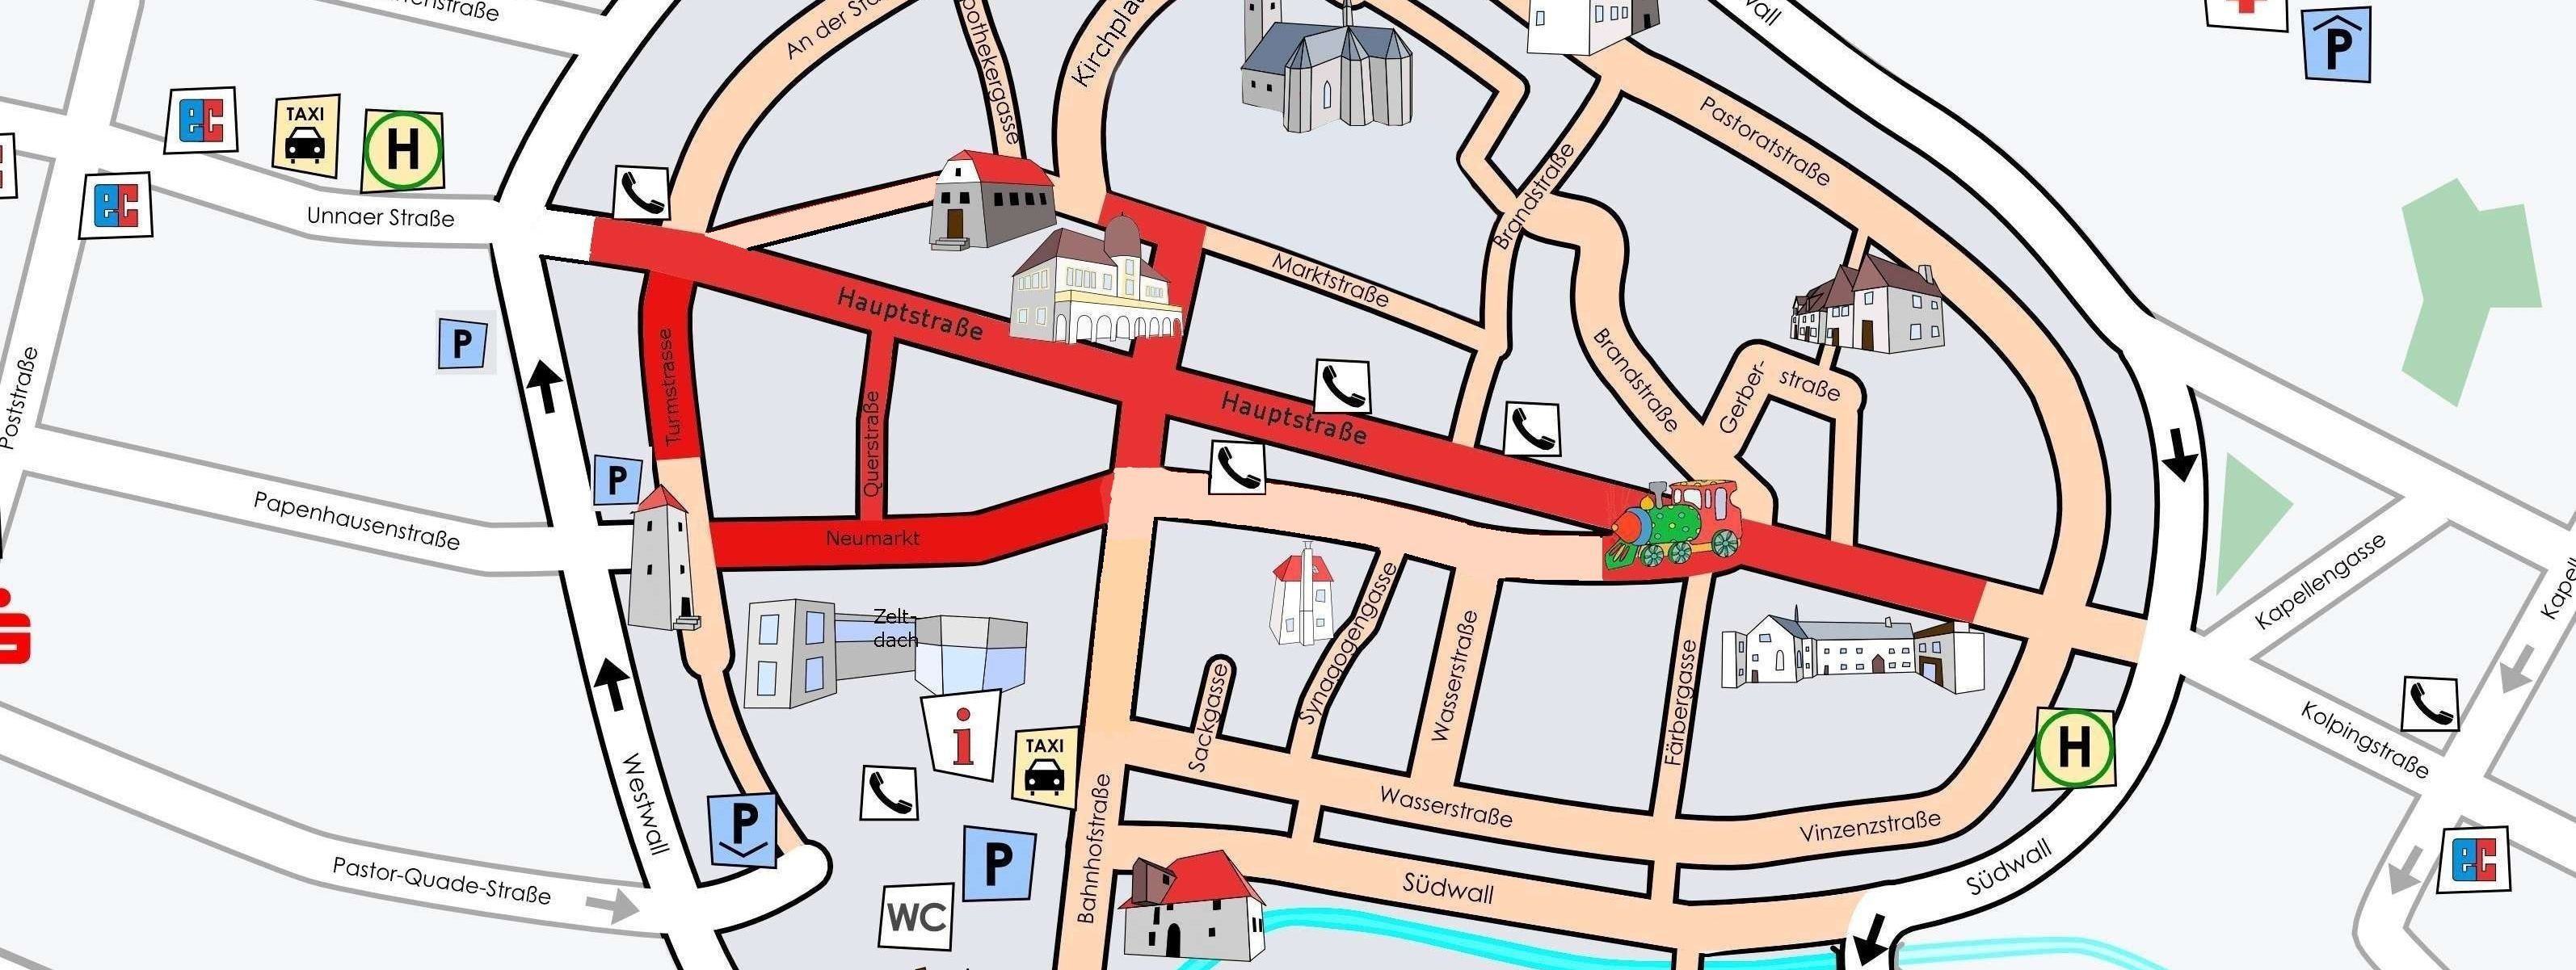 Zu sehen ist ein Plan der Mendener Innenstadt. Die Hauptstraße, Querstraße, Neumarkt und Turmstraße sind rot markiert, da in diesem Bereich der Kinderflohmarkt stattfindet.